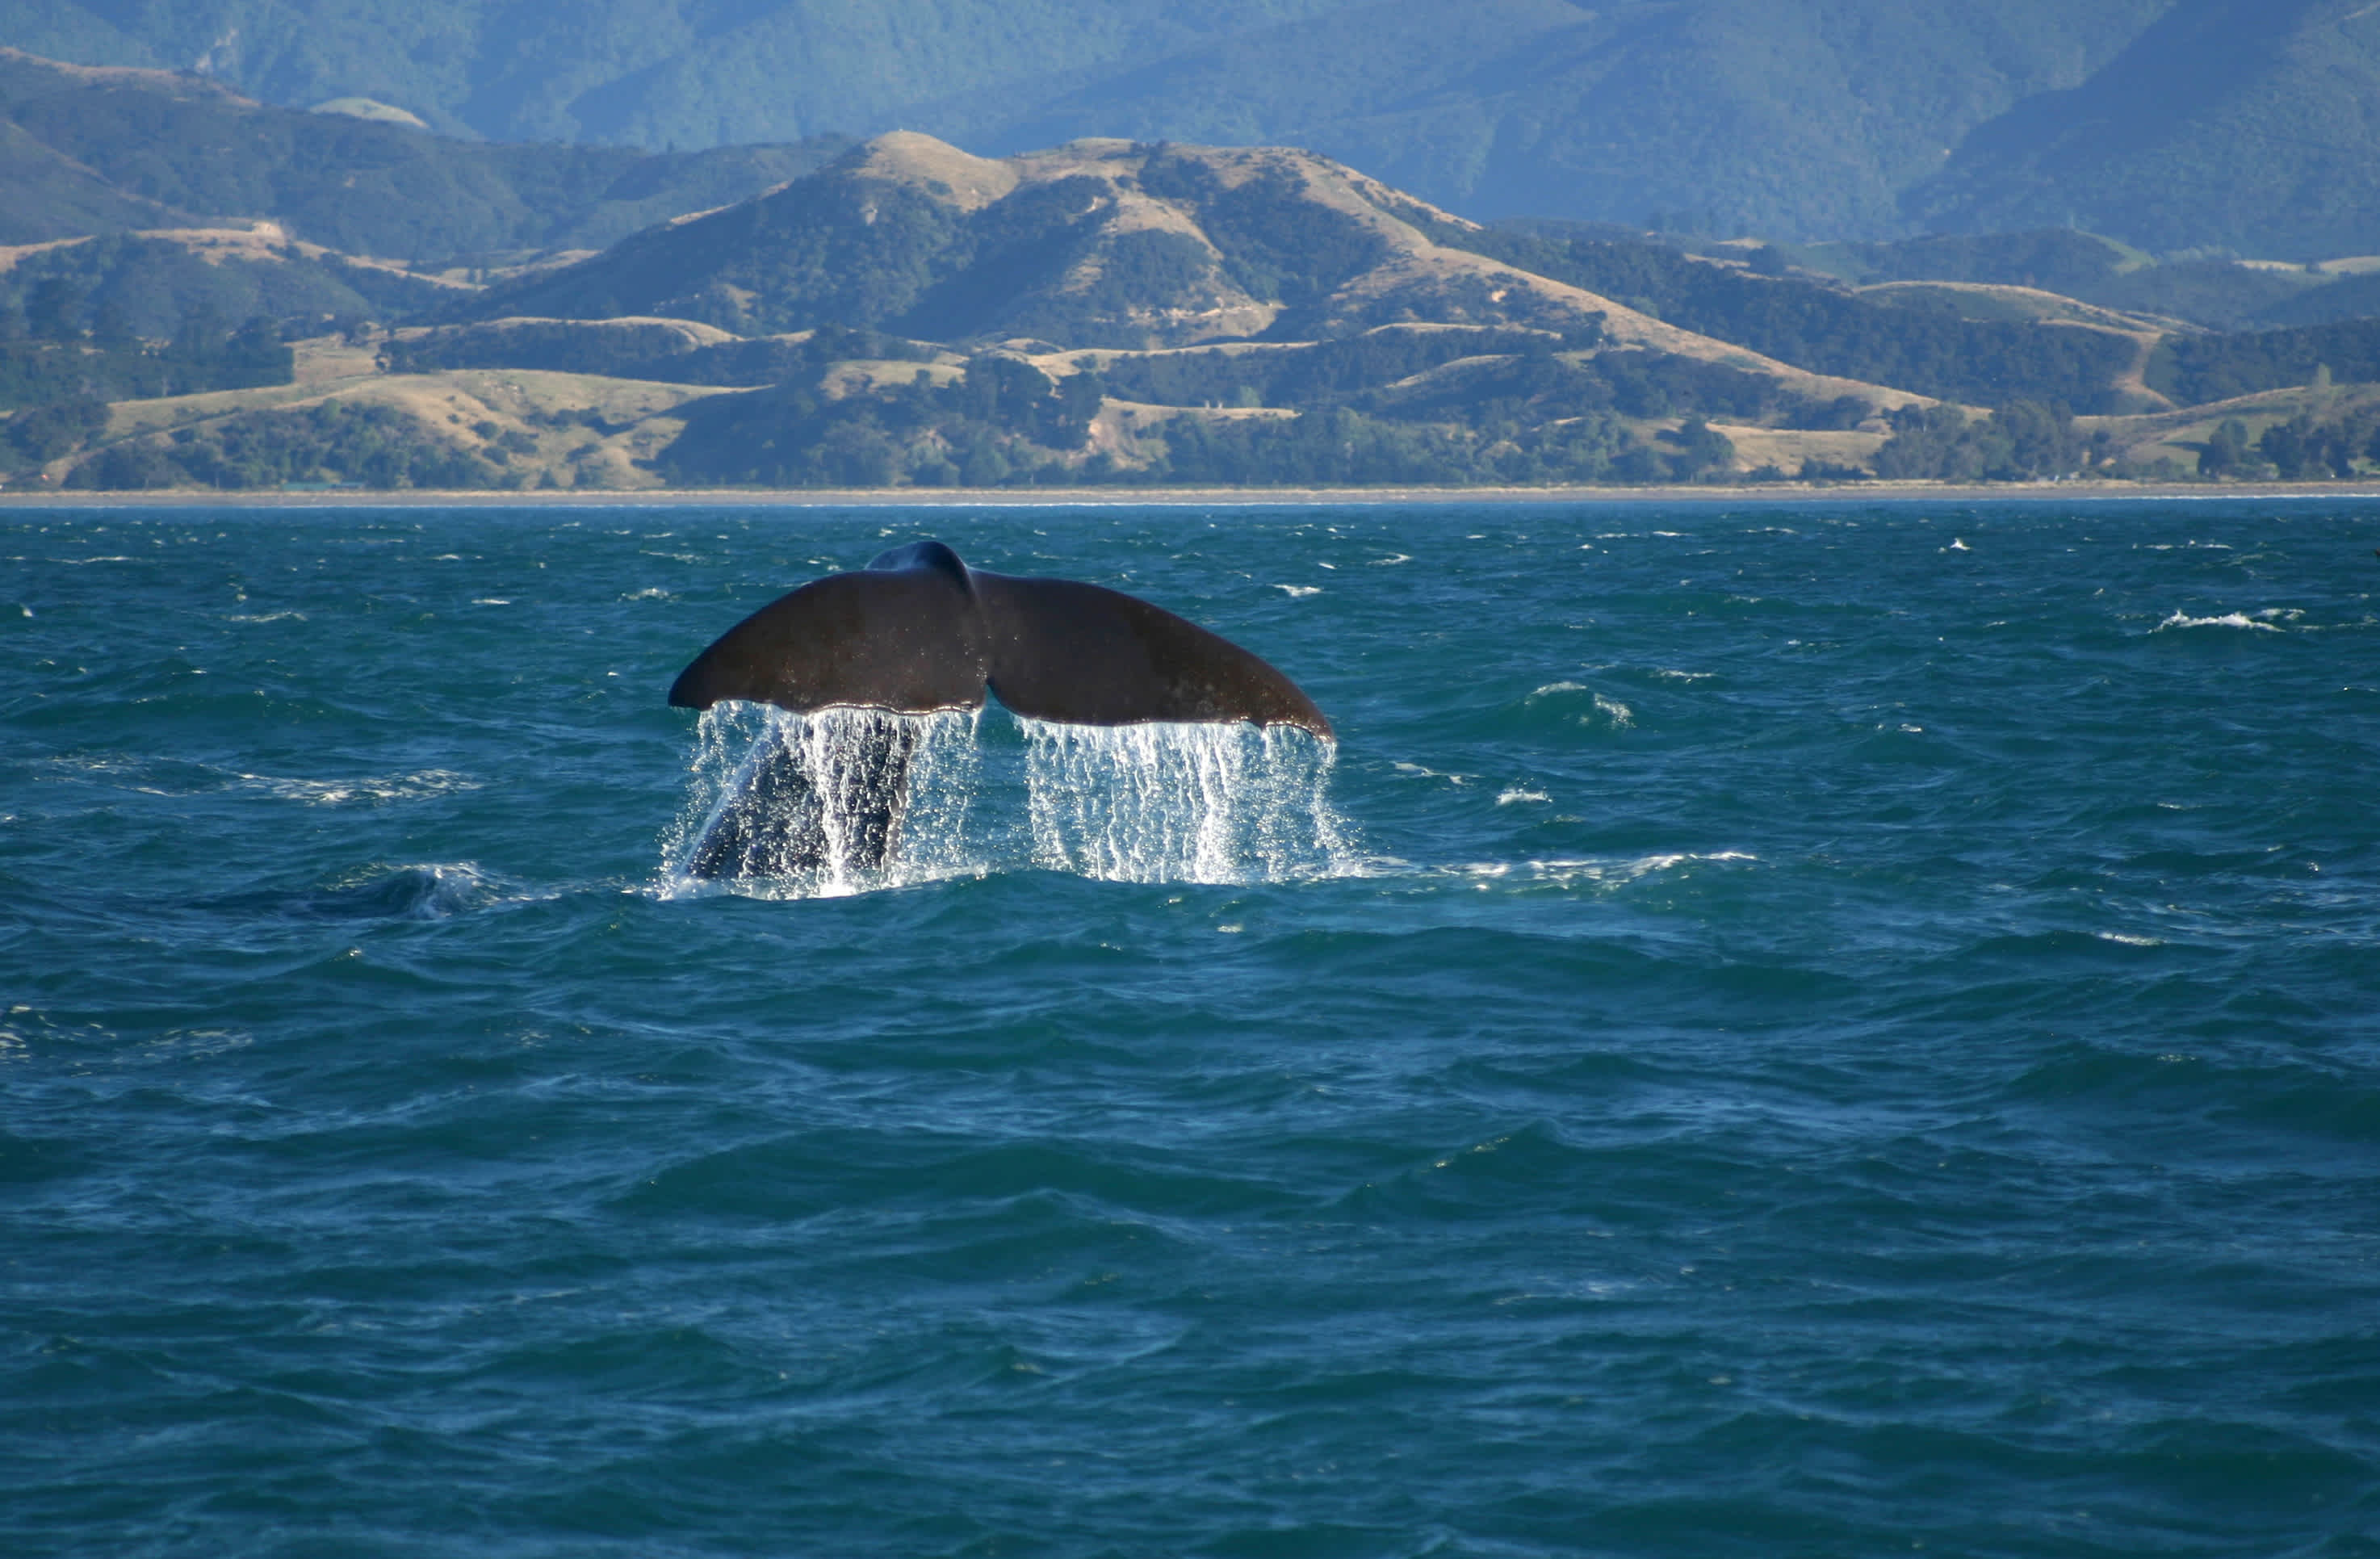 Queue d'une baleine en mer, Kaikoura, Nouvelle-Zélande.